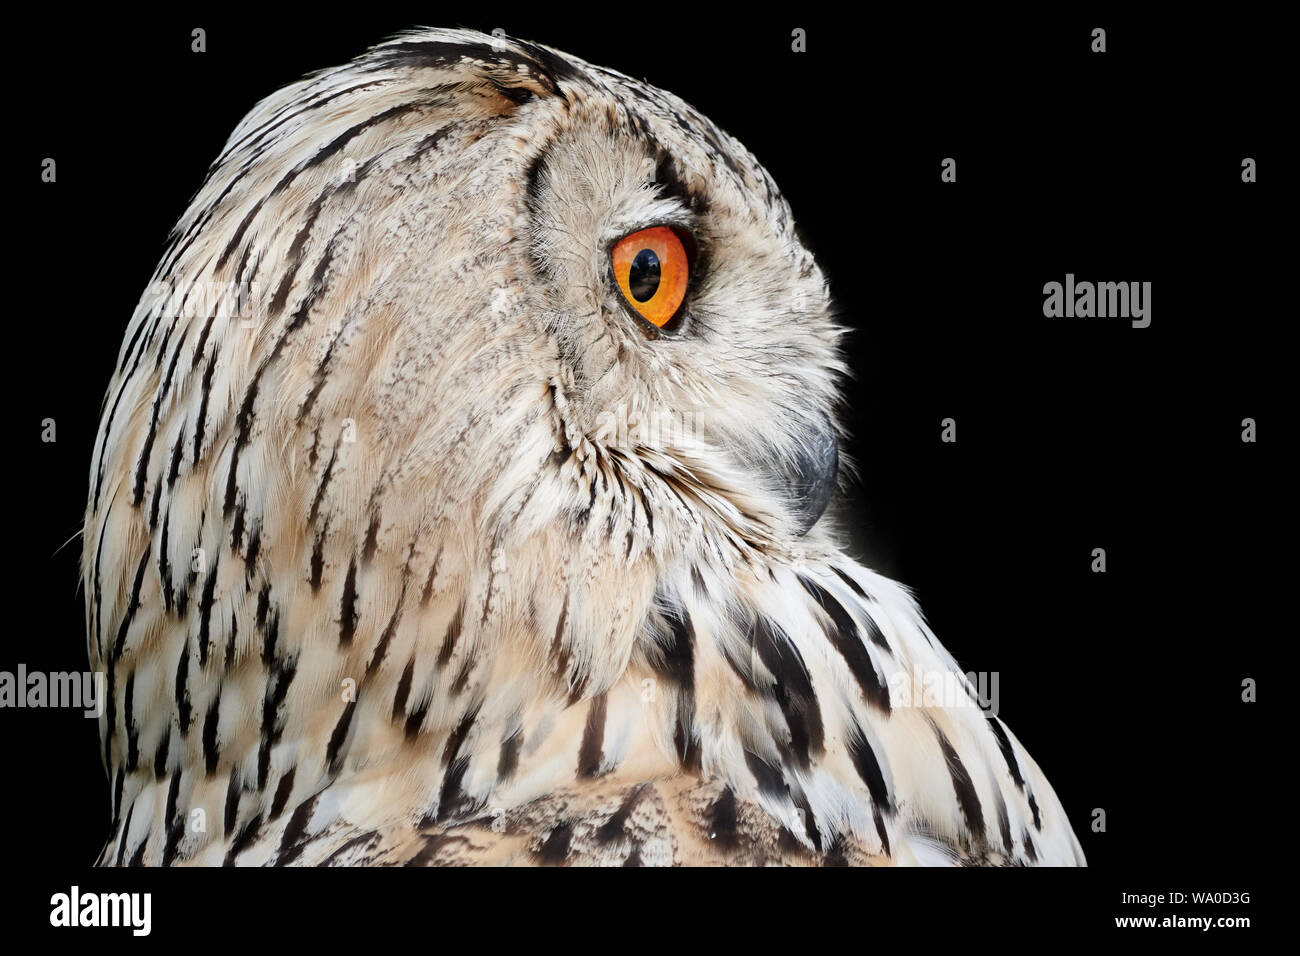 Seite Porträt einer Sibirischen Eagle-Owl (Bubo bubo Sibiricus) und schwarzer Hintergrund Stockfoto